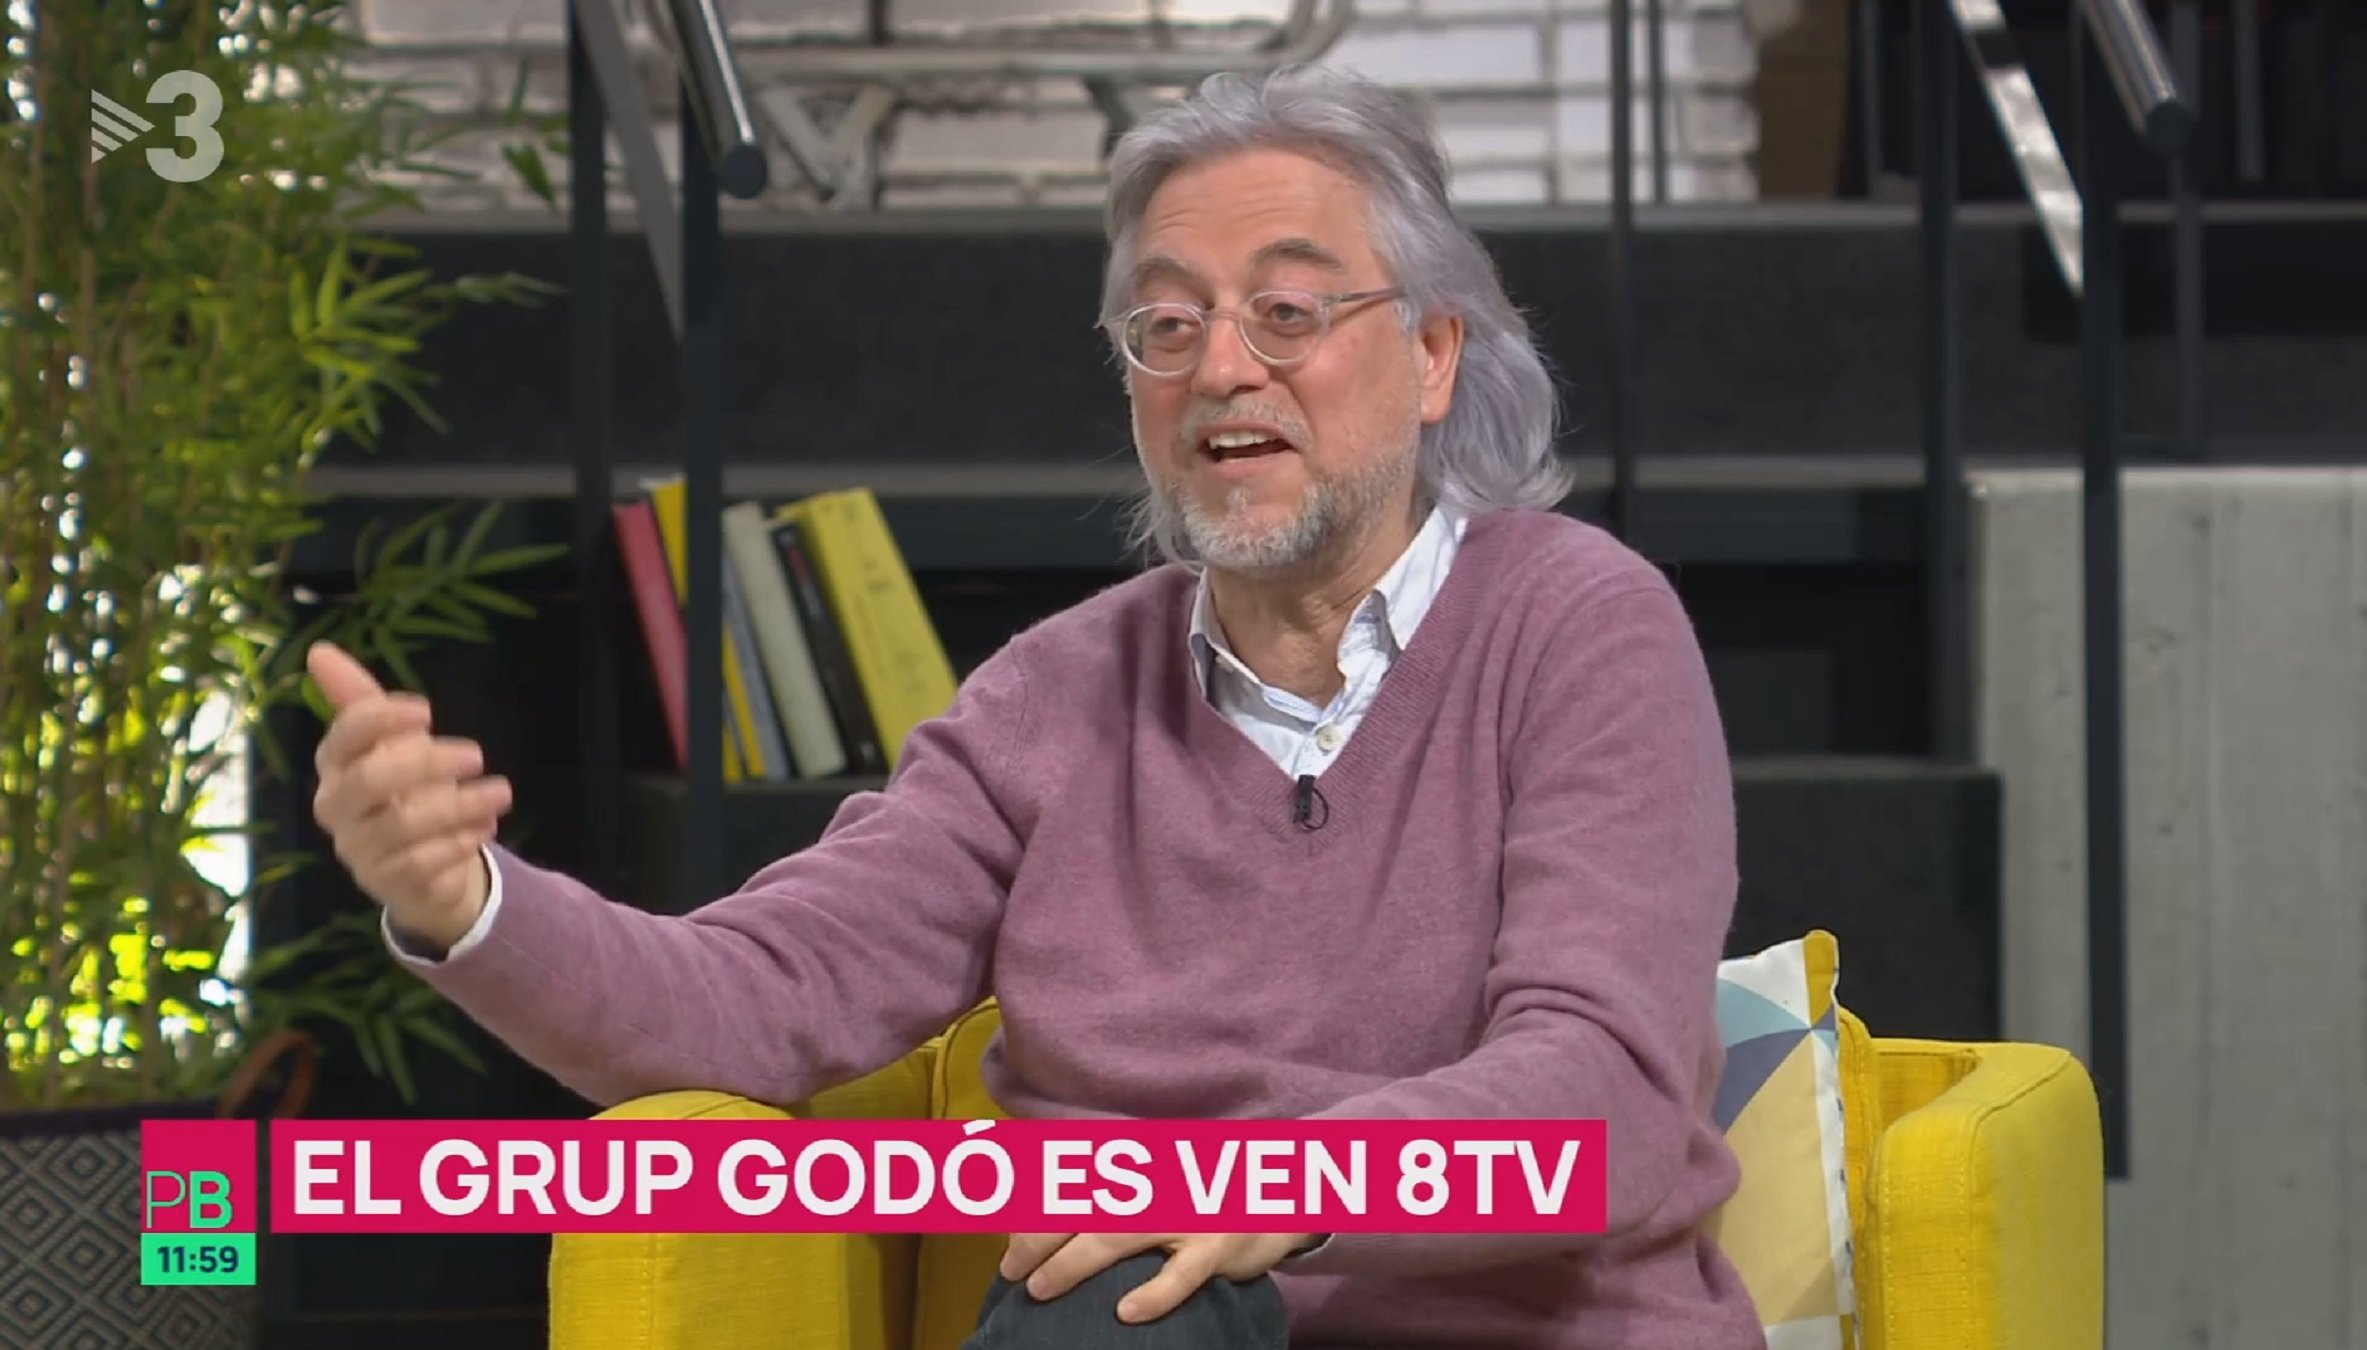 Víctor Amela justifica al programa d'Ustrell per què el seu Grup Godó ven 8tv